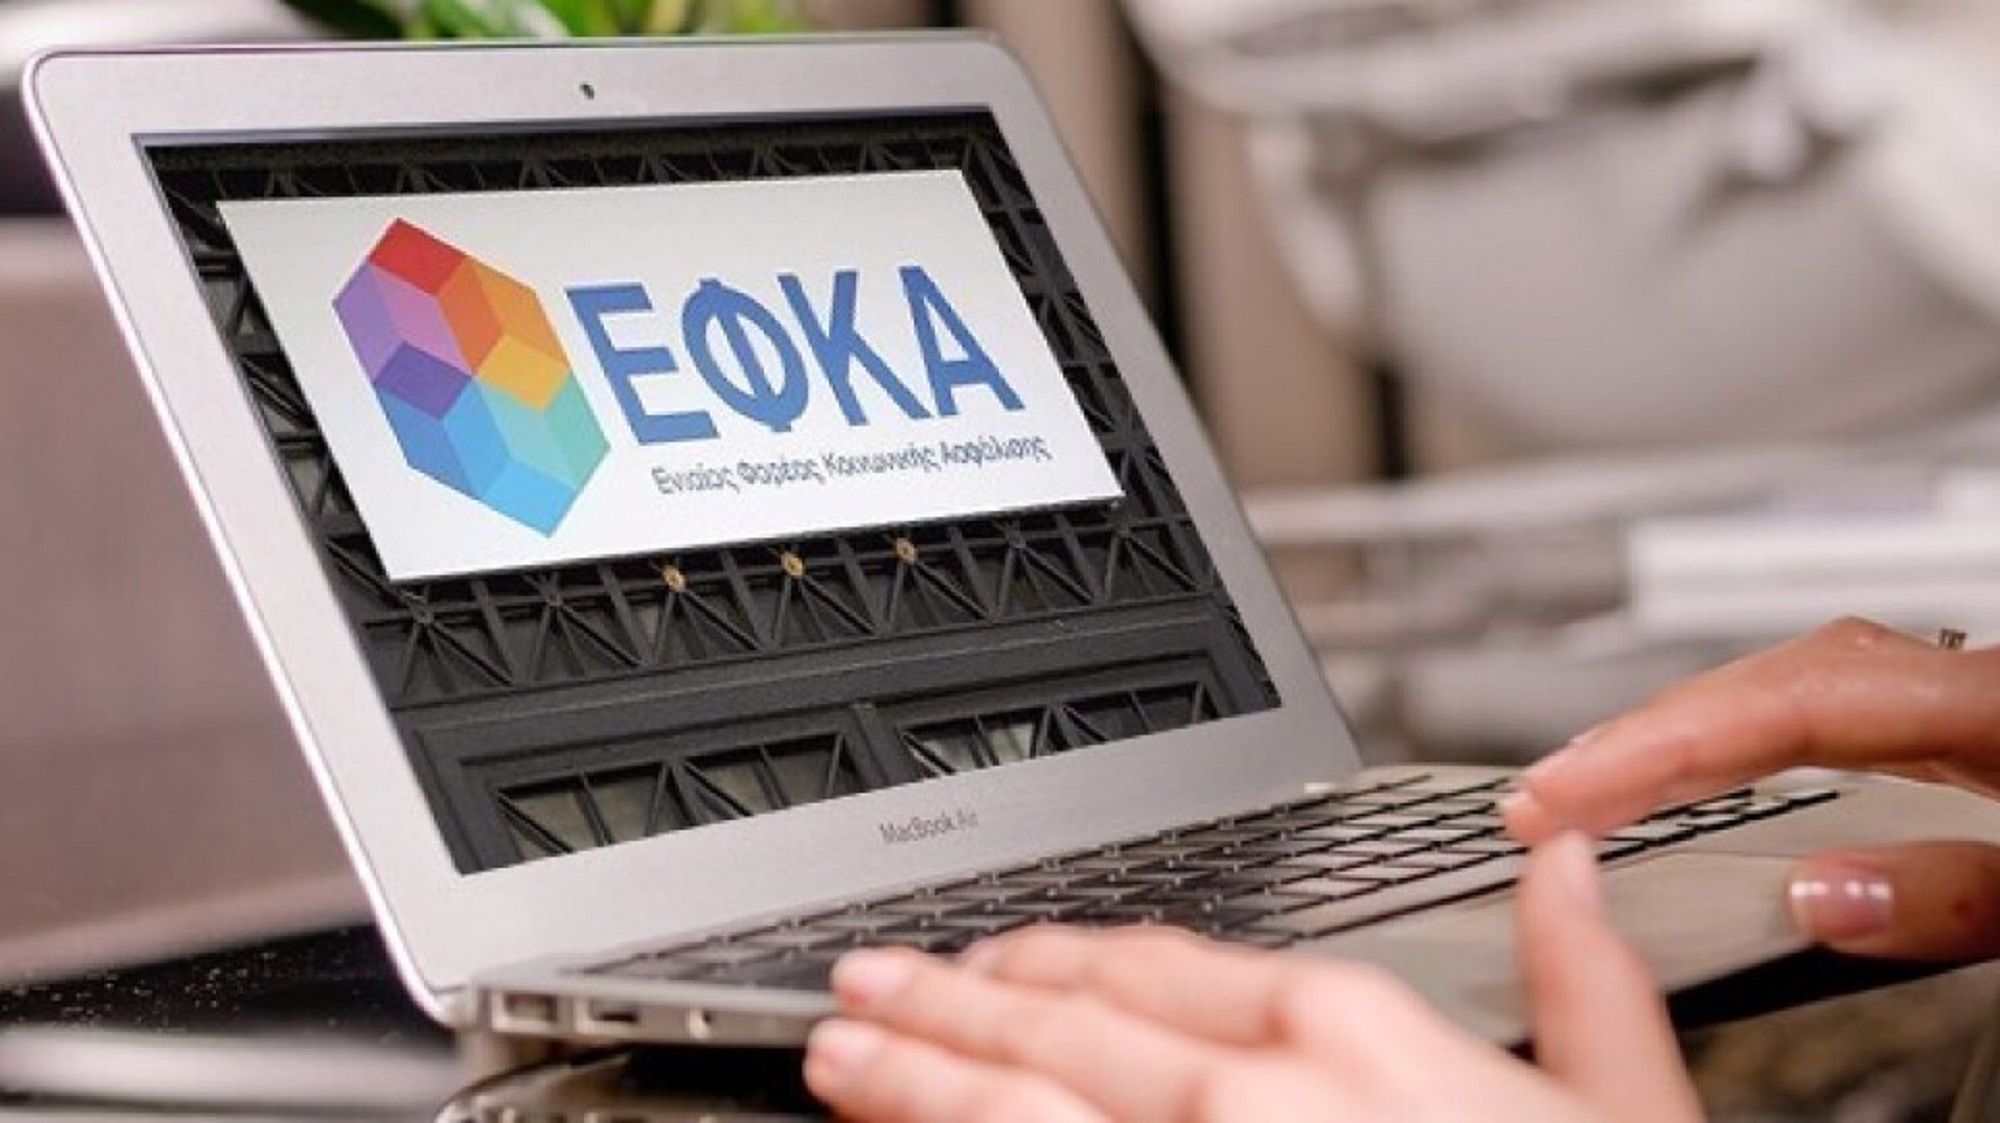 Νέα ψηφιακή υπηρεσία e-ΕΦΚΑ για την προαιρετική συνέχιση της ασφάλισης μη μισθωτών